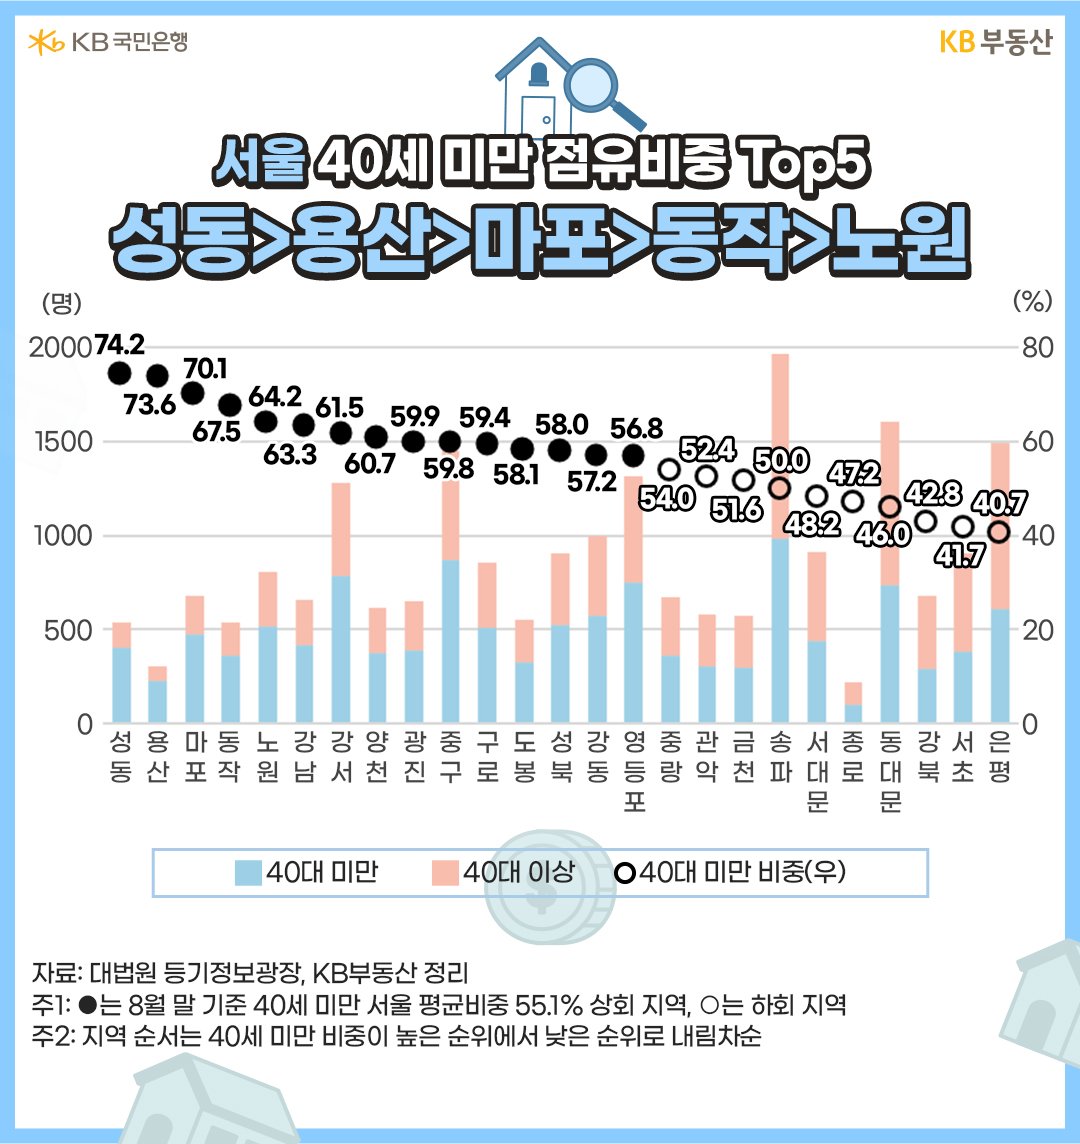 올해 8월까지 서울에서 ‘40세 미만 첫 부동산매수인 비중’ Top5는 '성동구' 74.2%>'용산구' 73.6%>'마포구' 70.1%>'동작구' 67.5%>'노원구' 64.2% 순서.